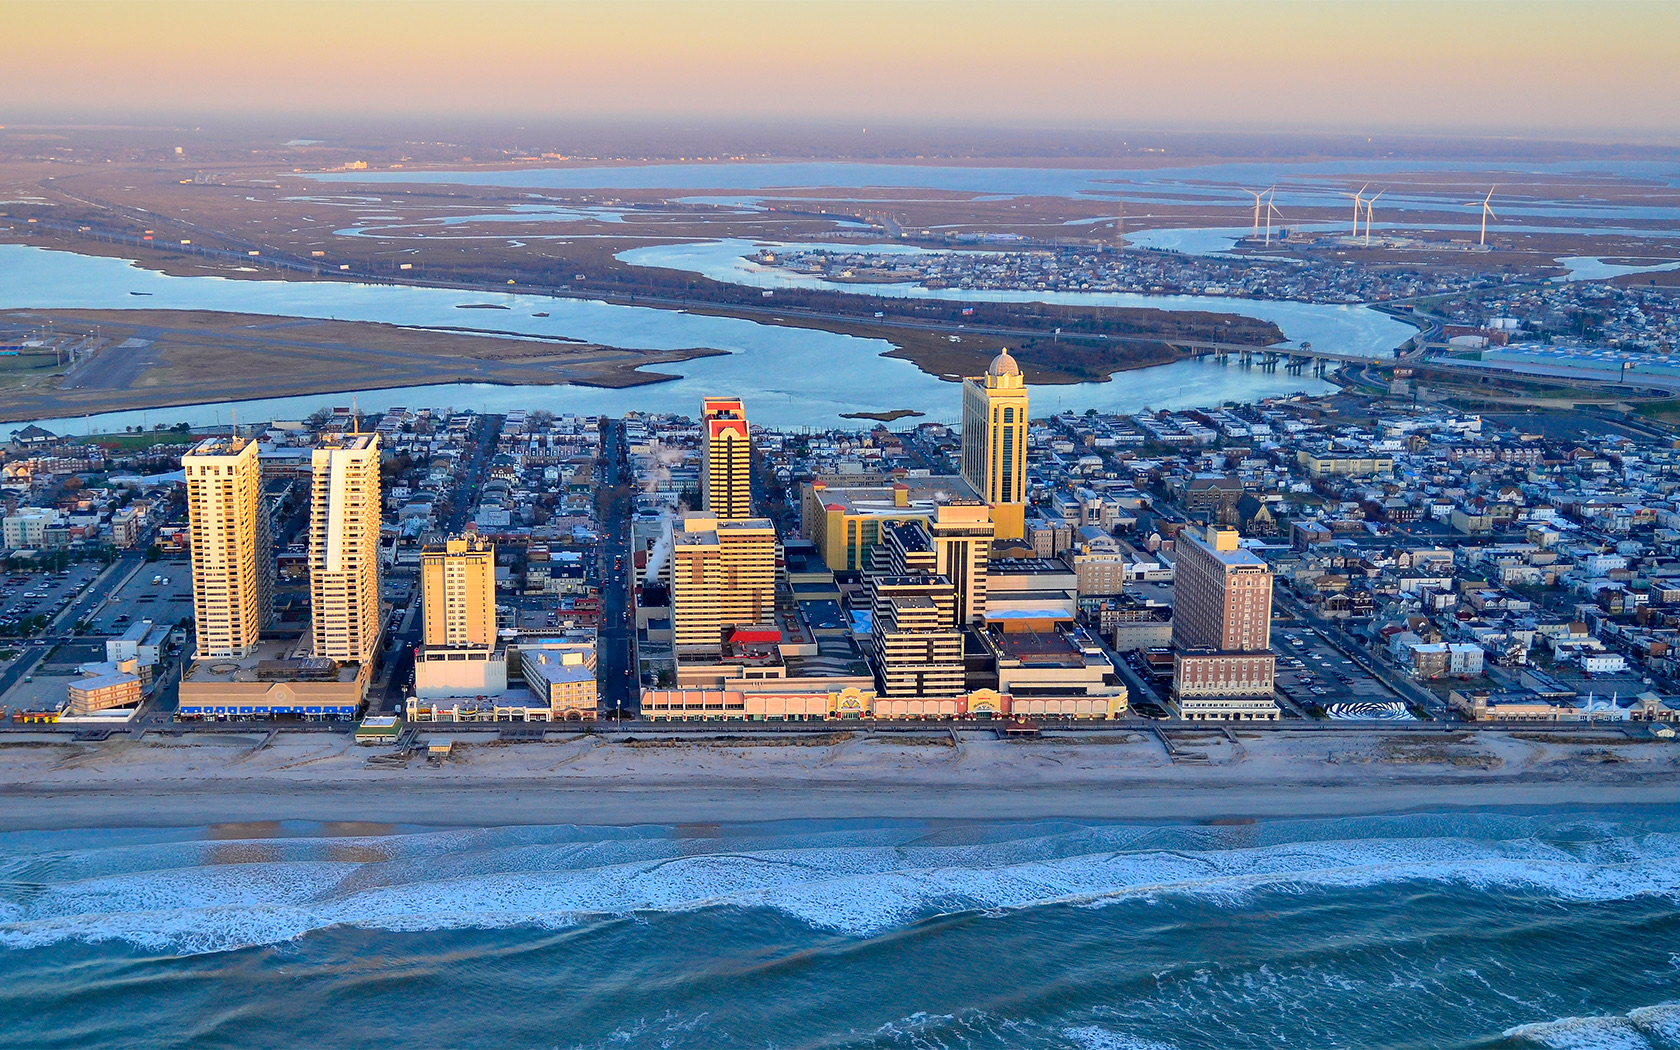 Aerial view of Atlantic city at dawn.